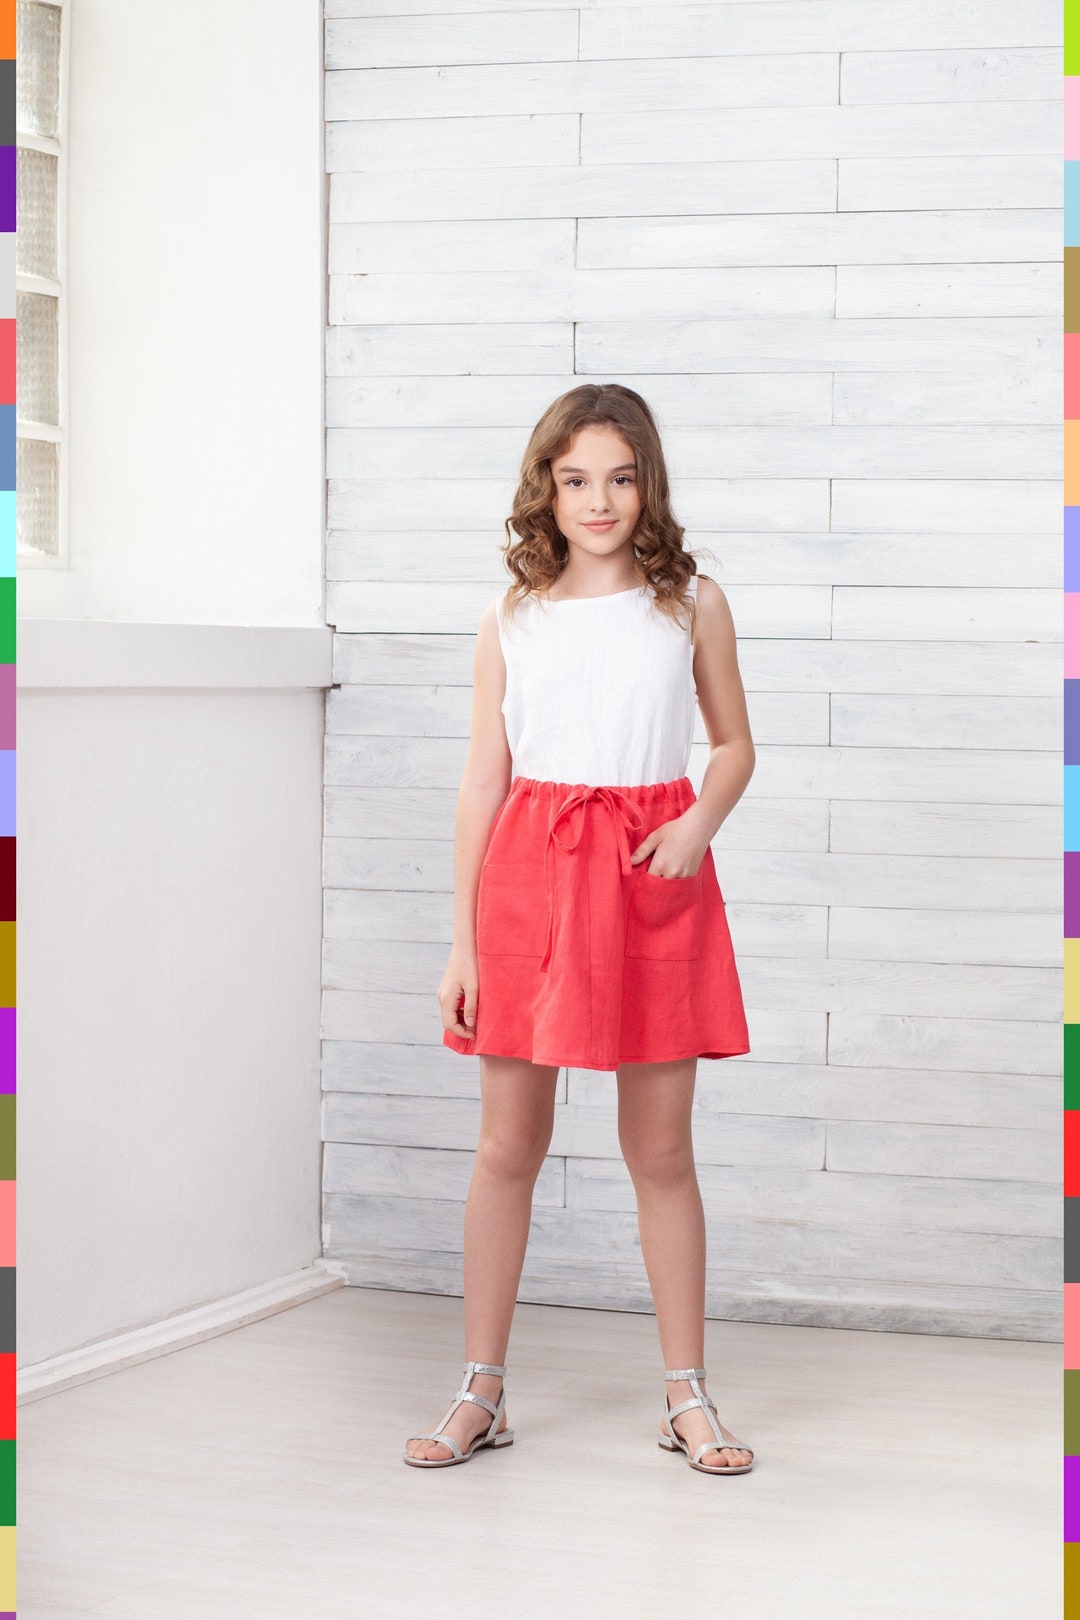 Coral Kids Skirt. Red Girls Skirt. Skirt With Pockets. Mini - Etsy